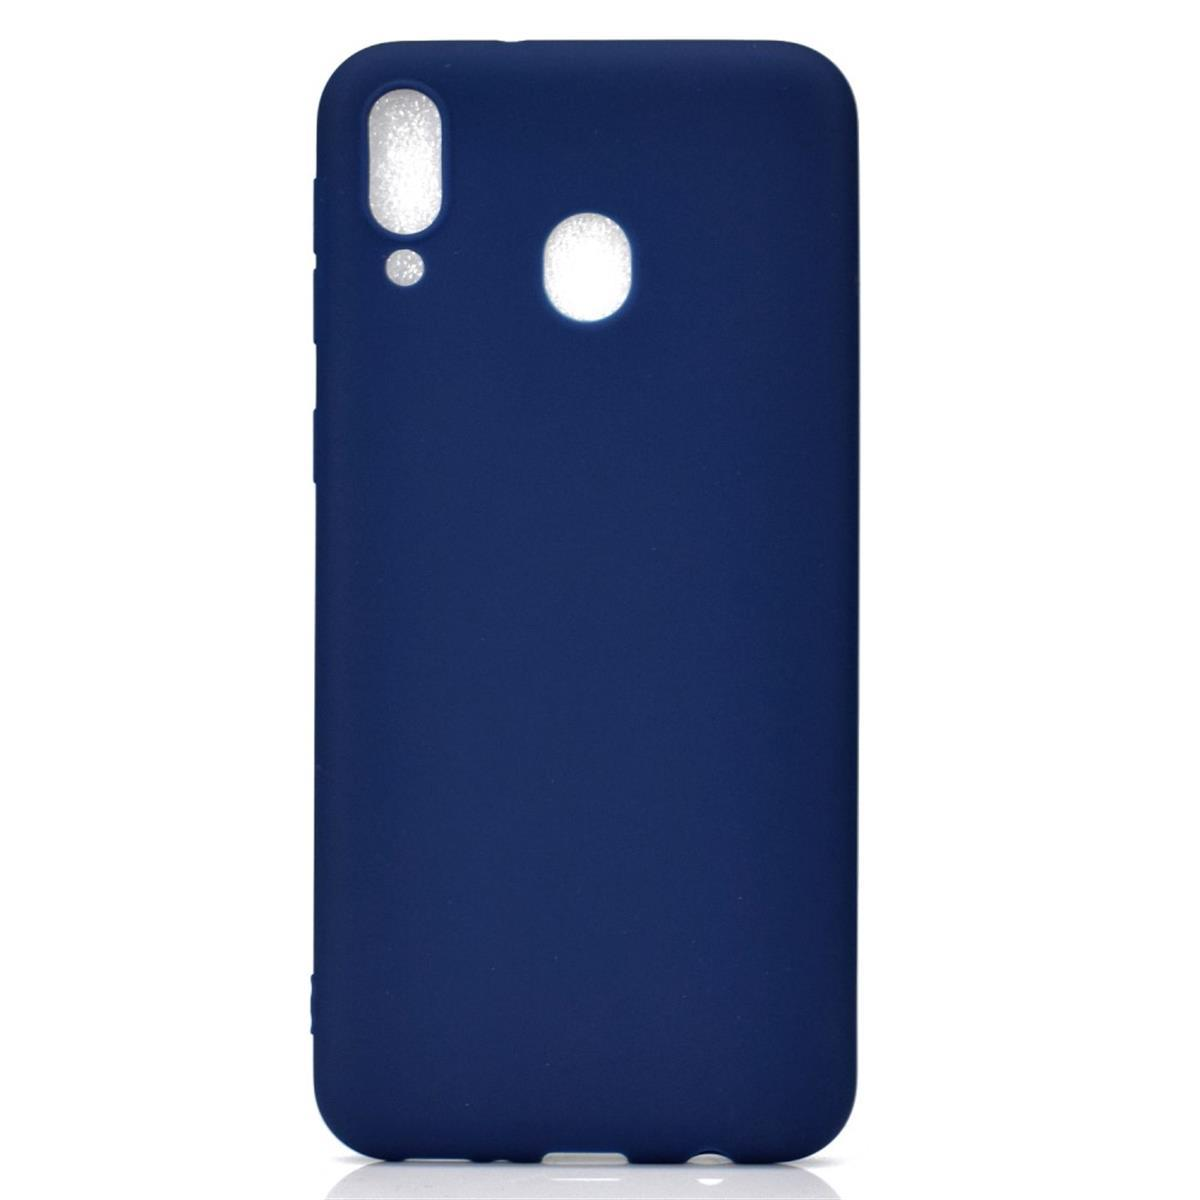 Handycase A40, Samsung, Blau COVERKINGZ Silikon, aus Galaxy Backcover,